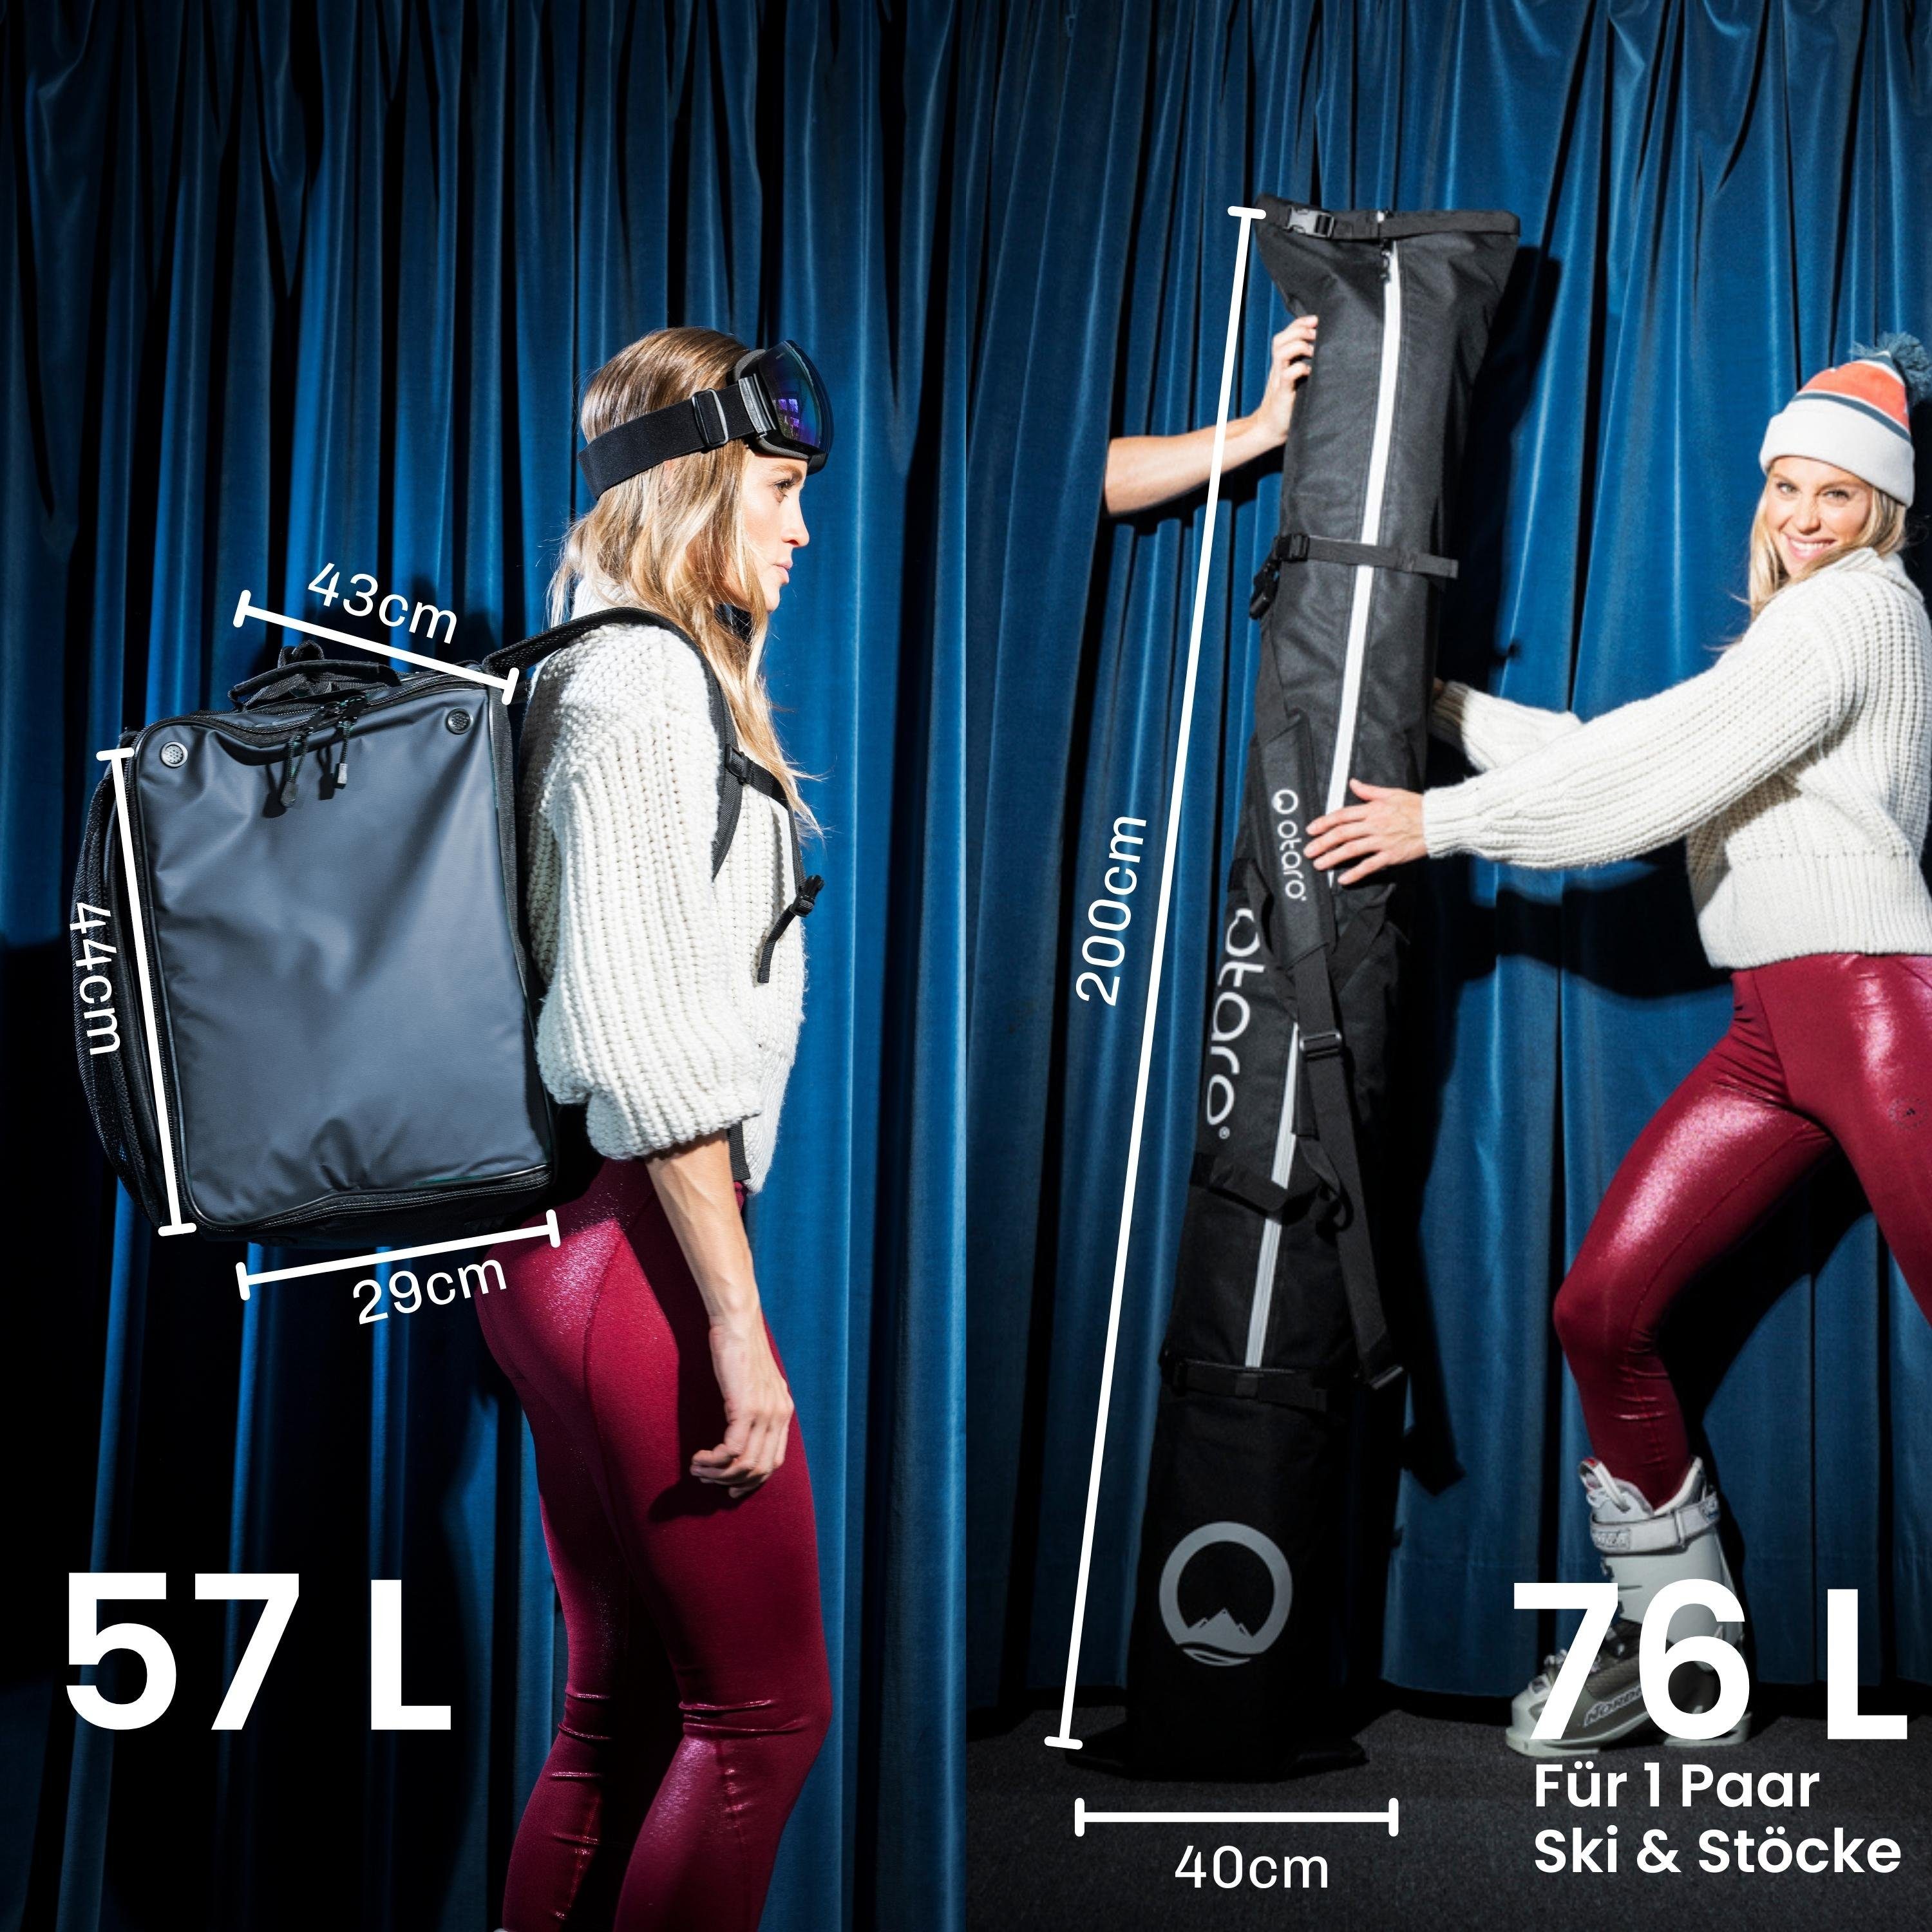 Perfekt Paar Schwarz (Schutz Standfläche, Skischuhtasche Sporttasche für Pro-Set für Ski & Felsgrau deine durchdacht, 1 Otaro Paar ausklappbare Ausrüstung, für 1 Stöcke) Ski Set: Skitasche, +